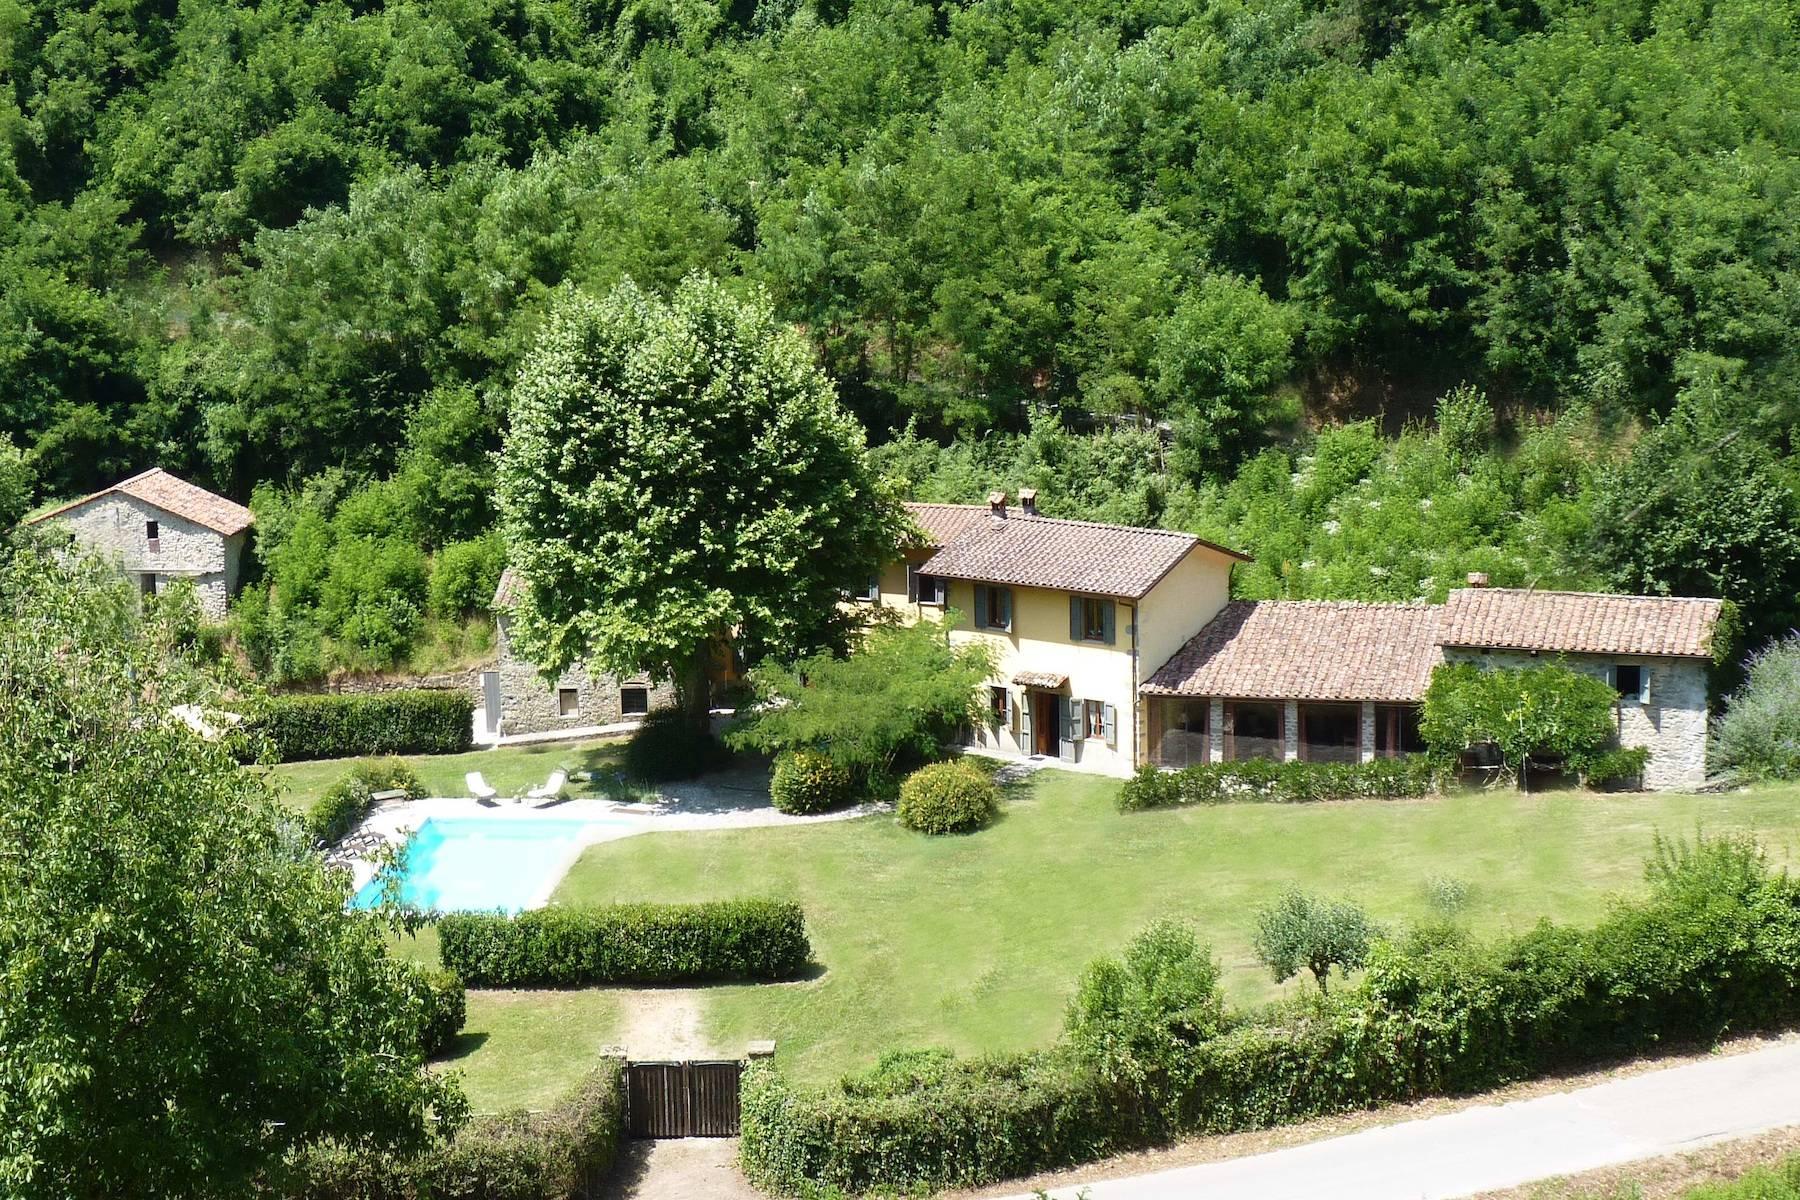 Maison de campagne enchantée sur les collines autour de Lucca - 2